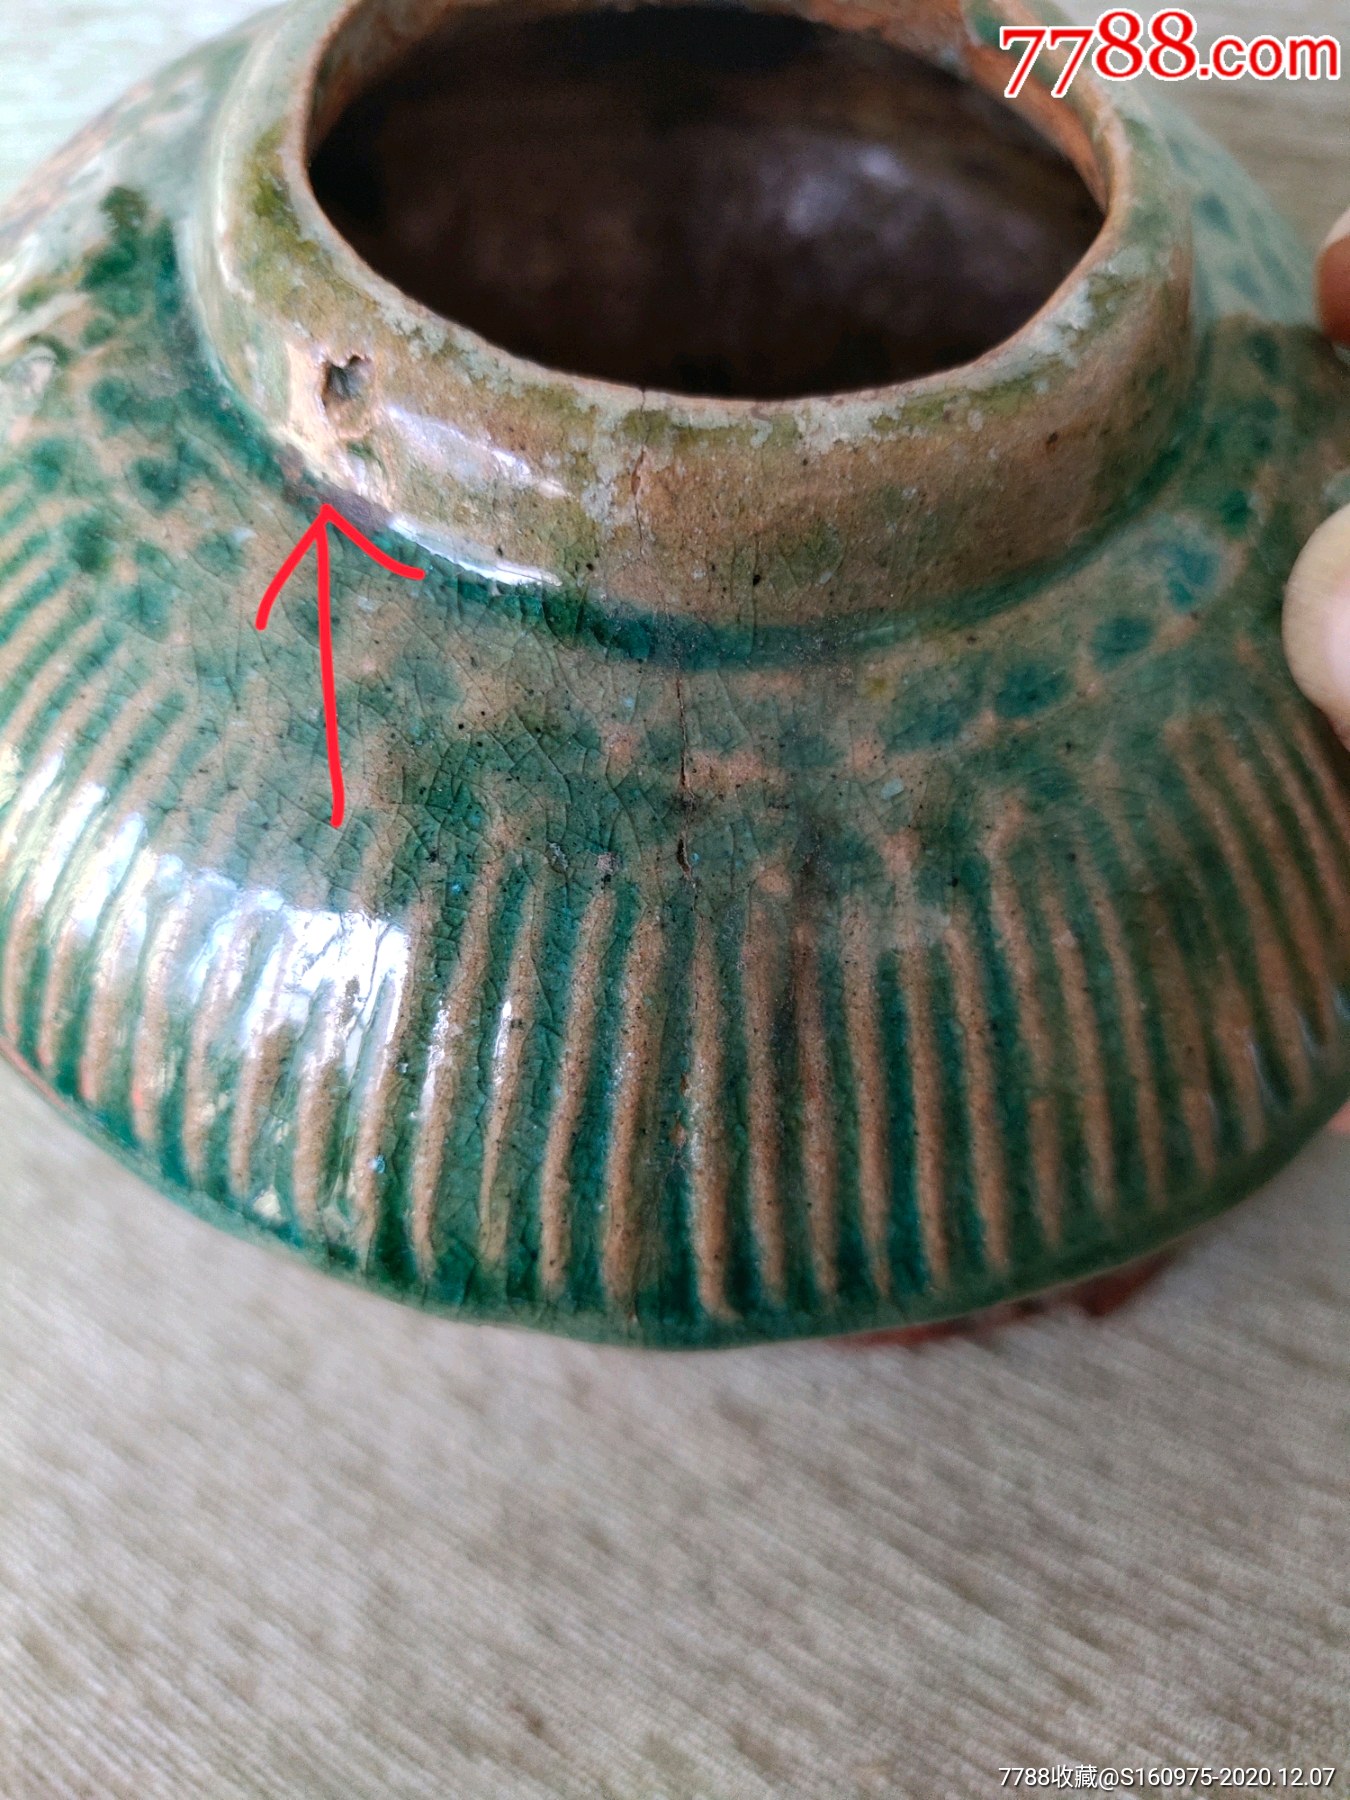 漂亮唐代绿釉印花莲花纹双系茶壶,一个系坏,口沿一个窑疤,另一个系有